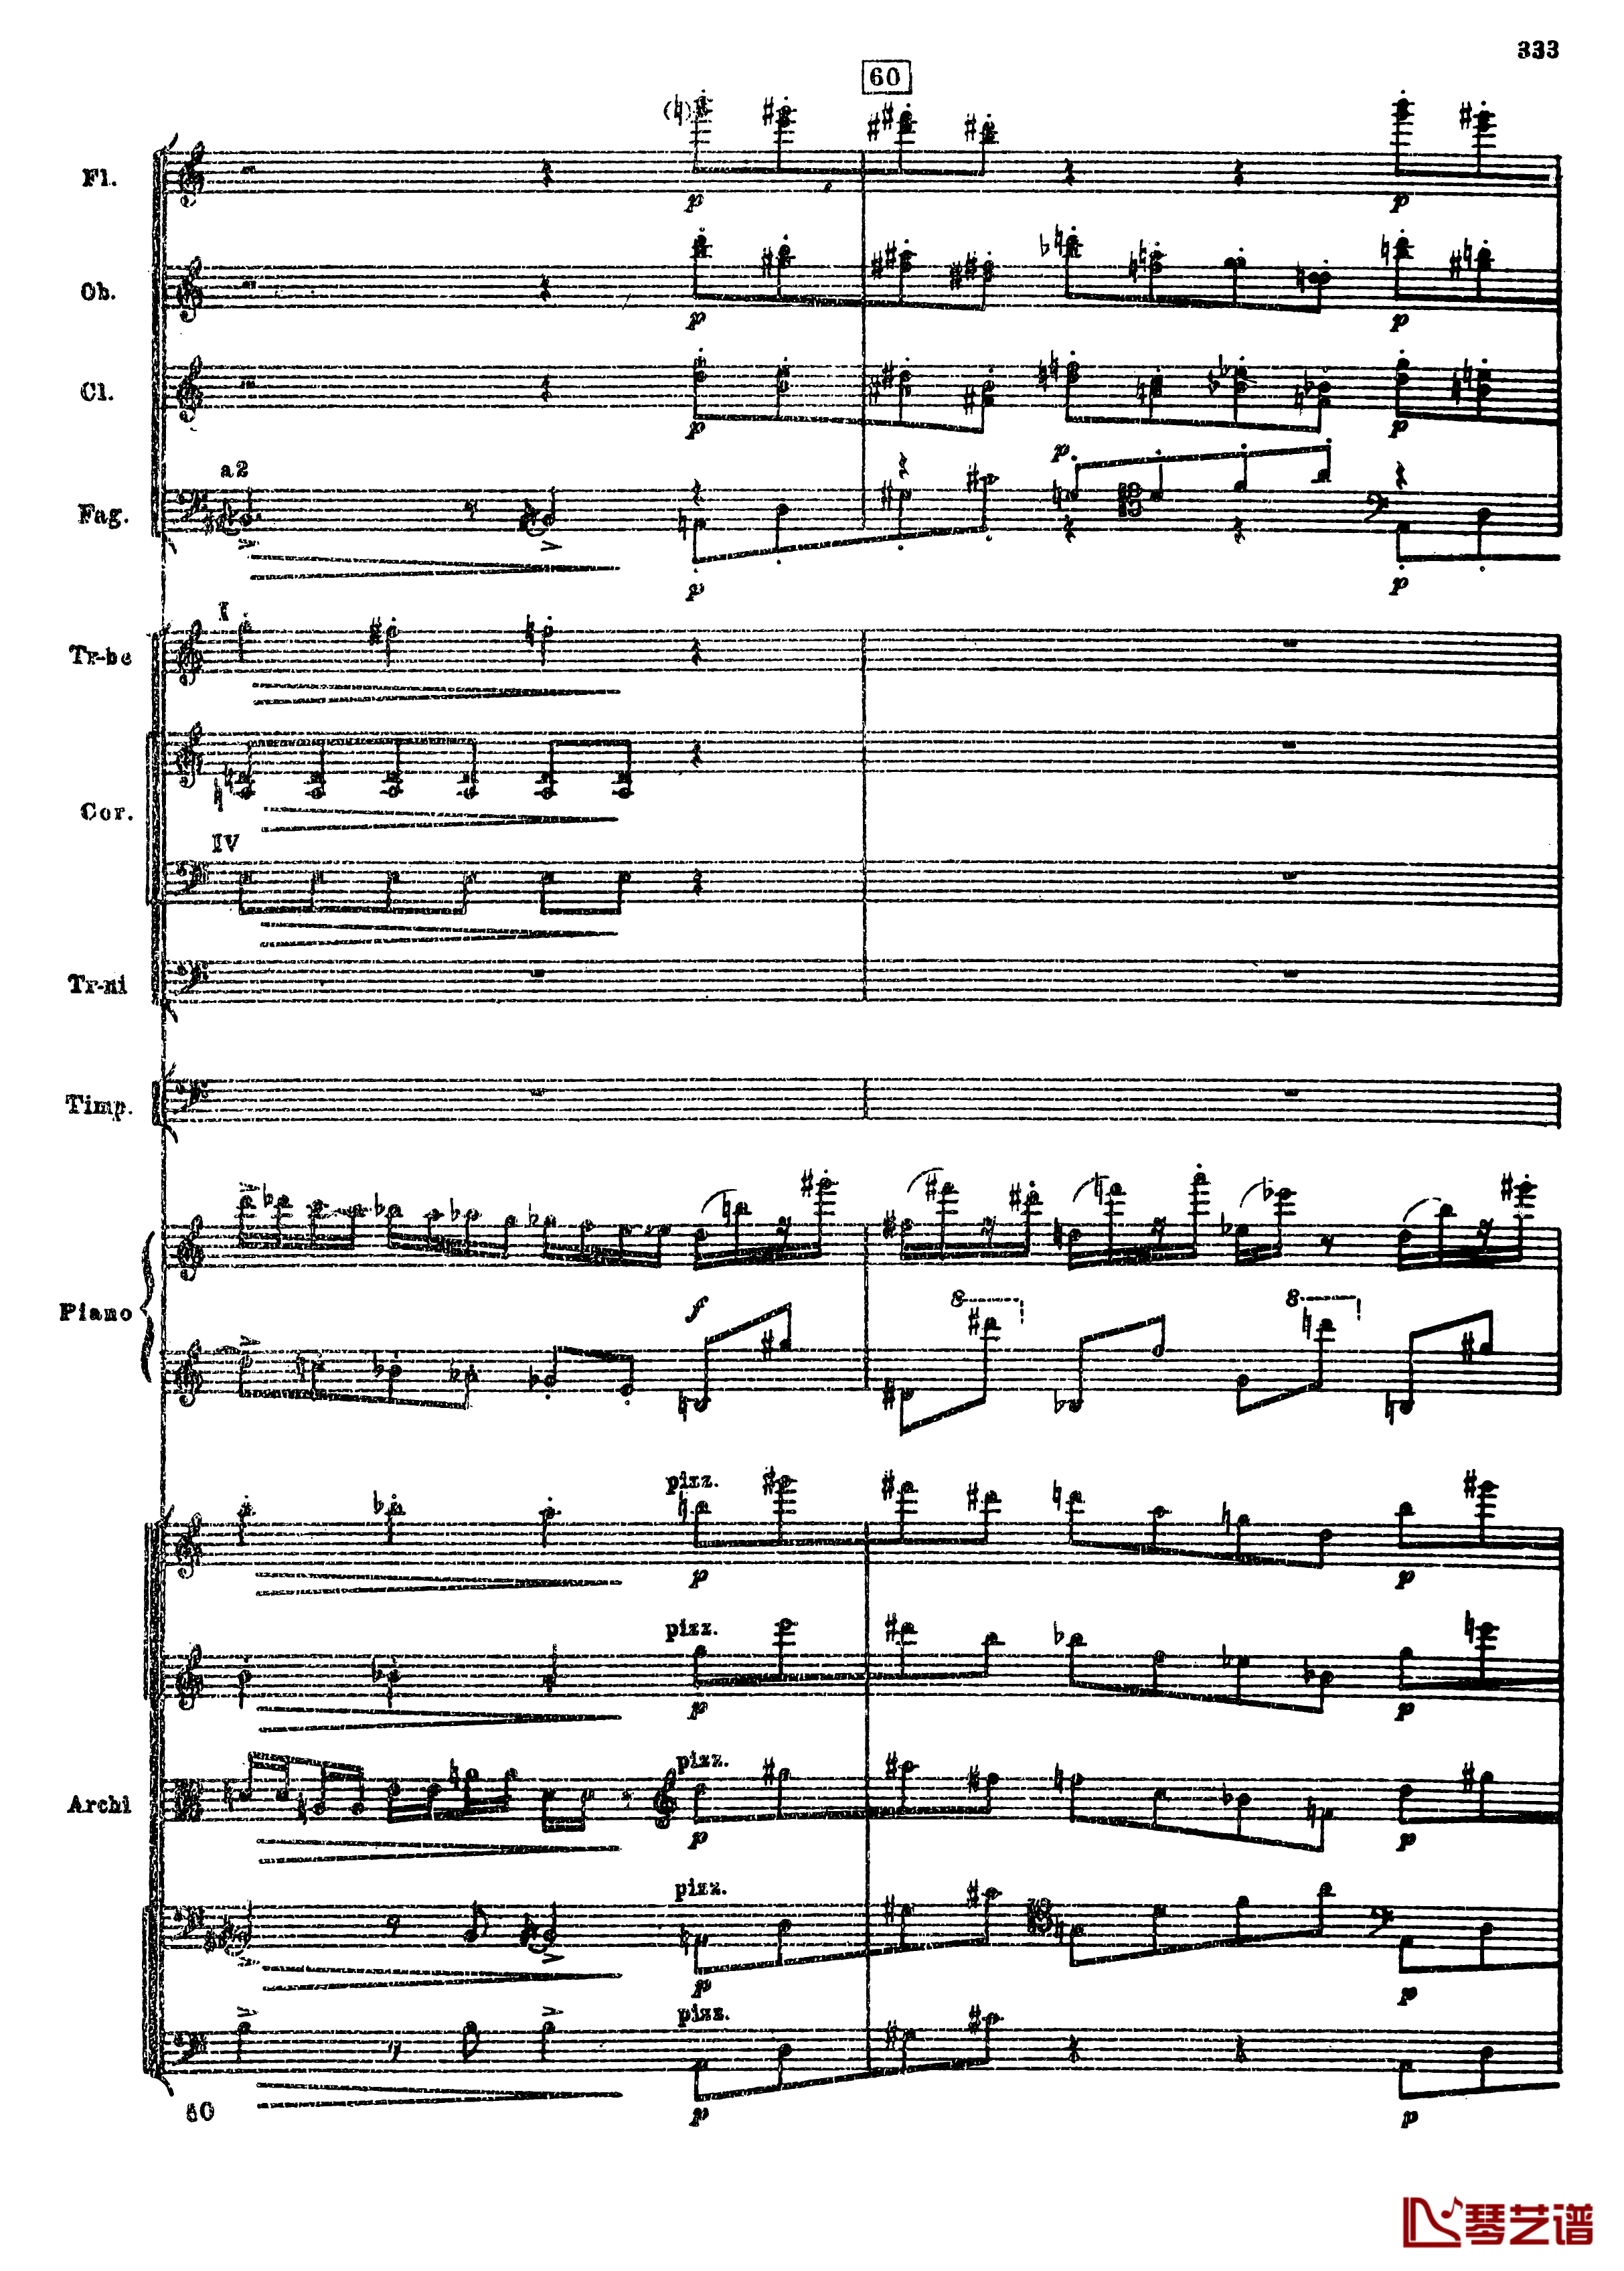 普罗科菲耶夫第三钢琴协奏曲钢琴谱-总谱-普罗科非耶夫65